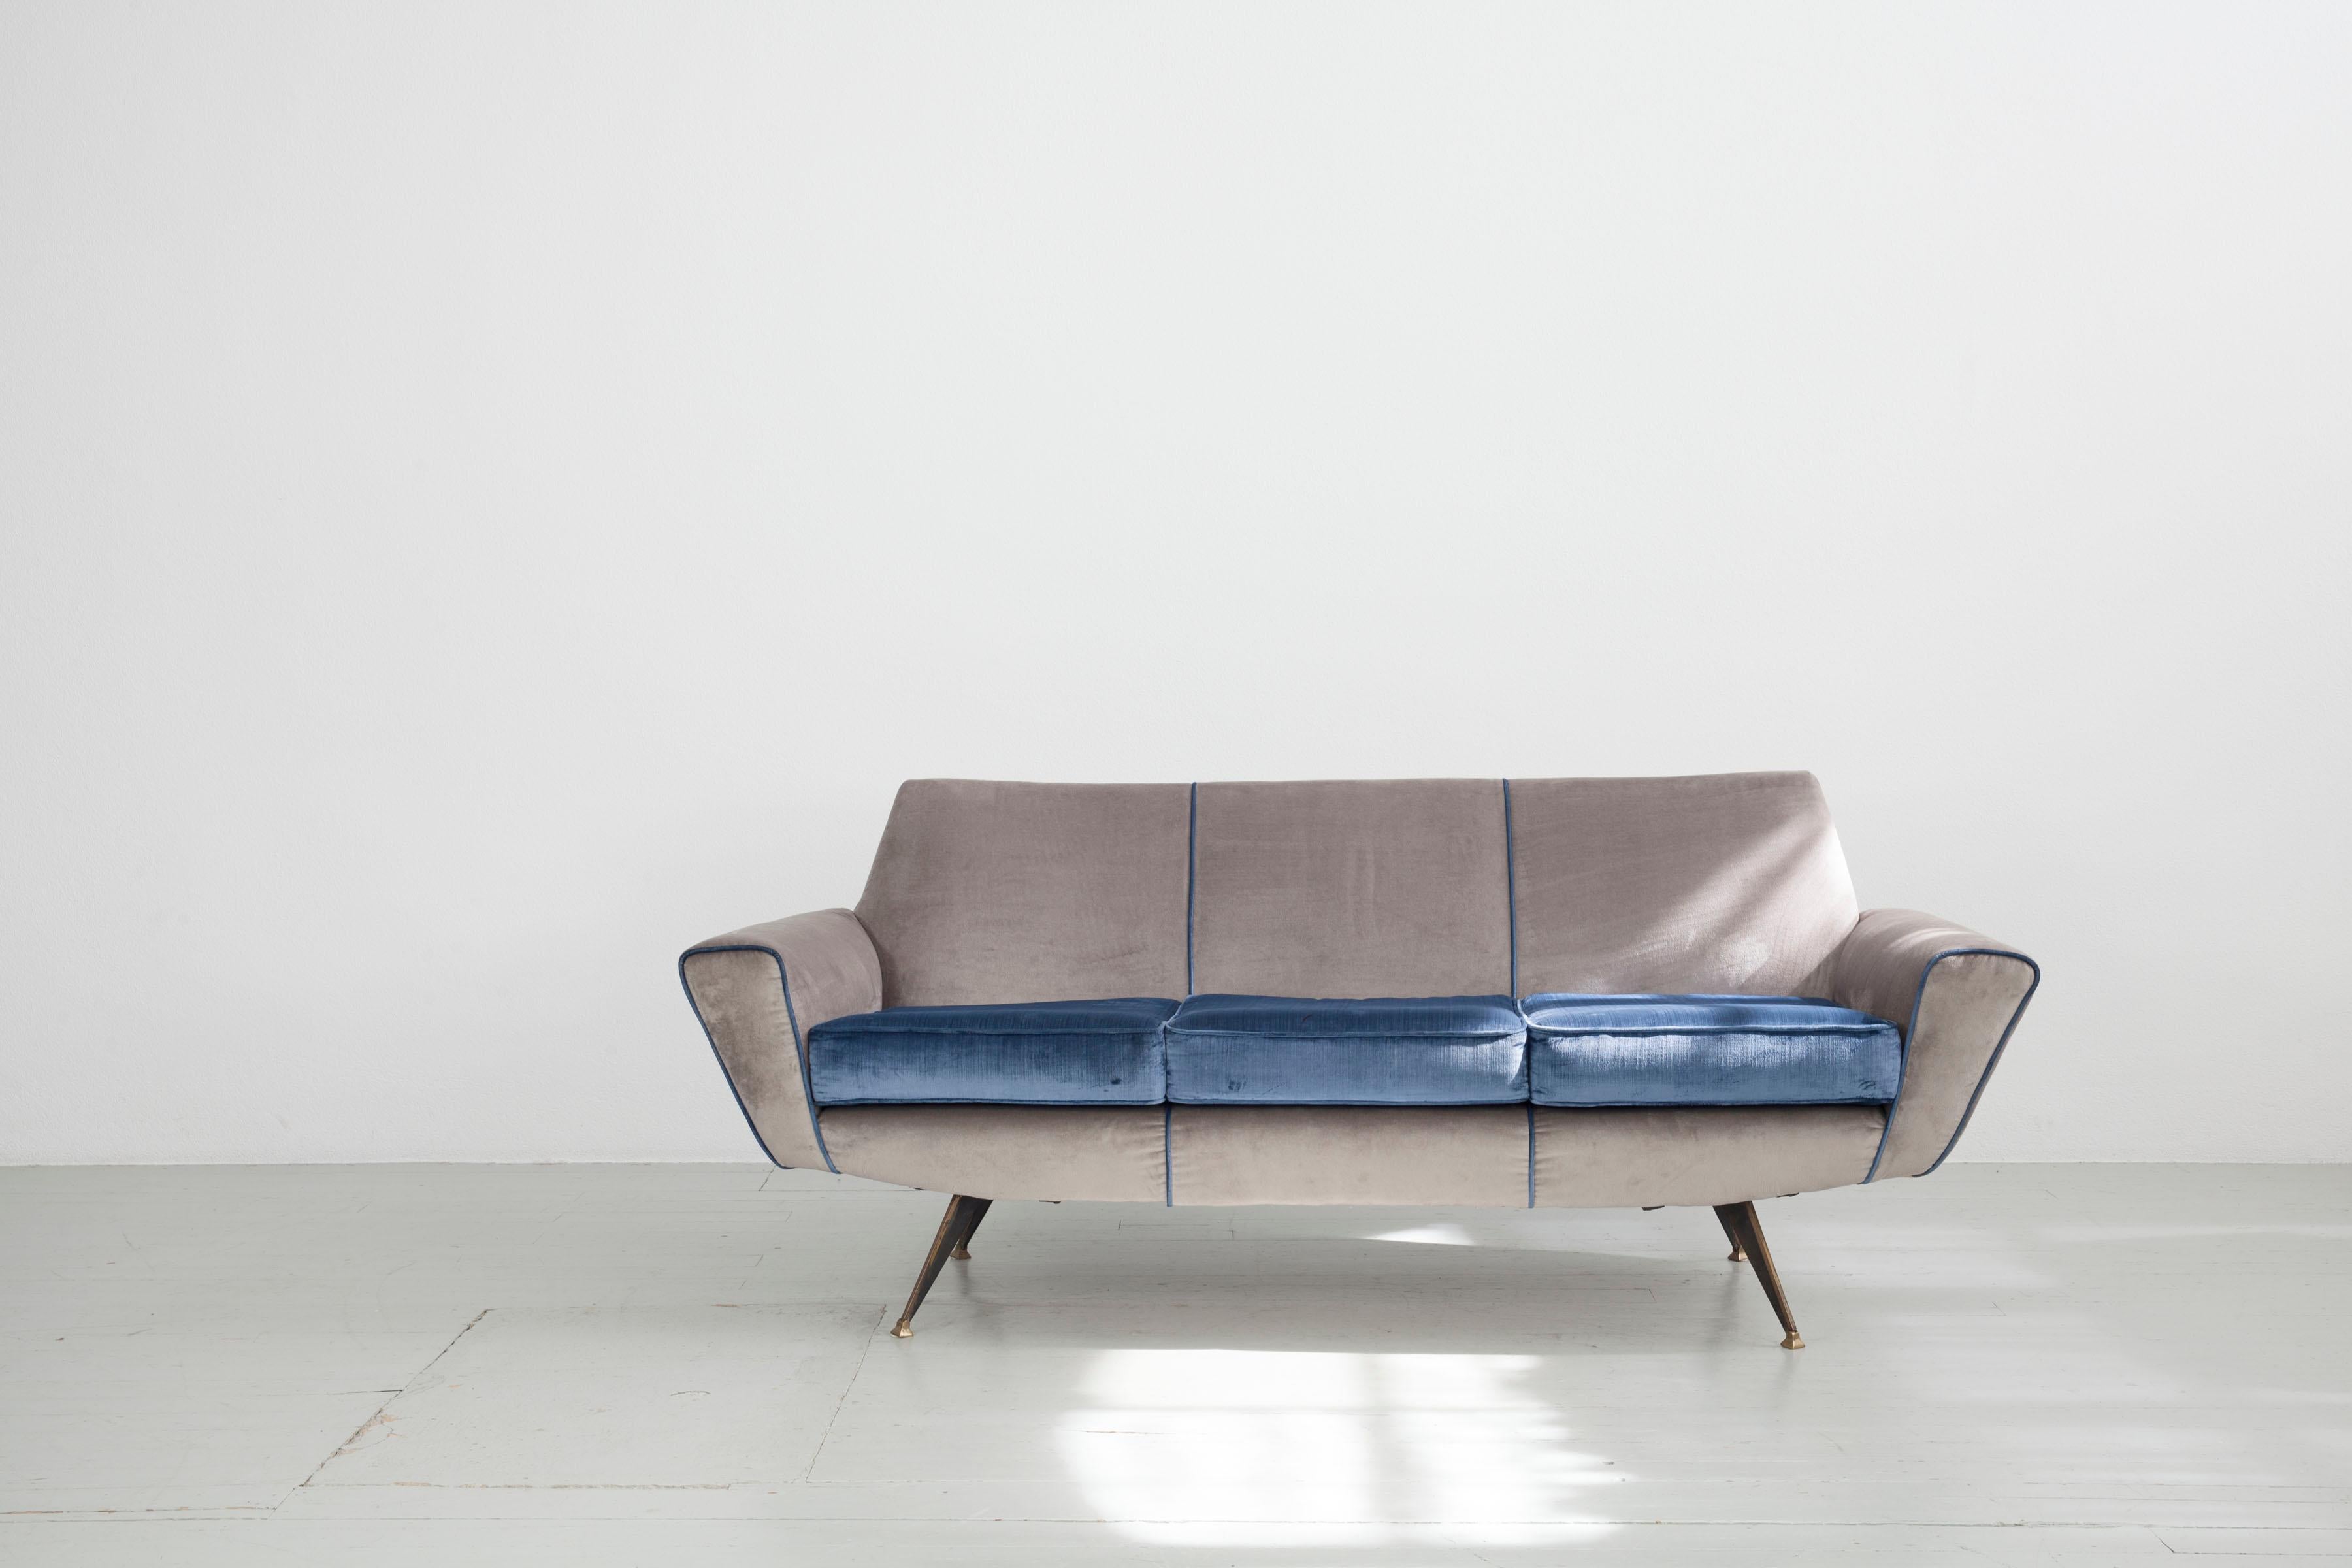 3 Sitzer Sofa
Design Lenzi, Studio Tecnico A.P.A. Quarrata- Pistoia, Modell '548' 1950er Jahre.
Die Polsterung mit blau-grauem Samtbezug hat leichte Flecken. Die schwarz lackierten Eisenbeine sind mit Messing beschlagen.

Sehr gerne senden wir Ihnen